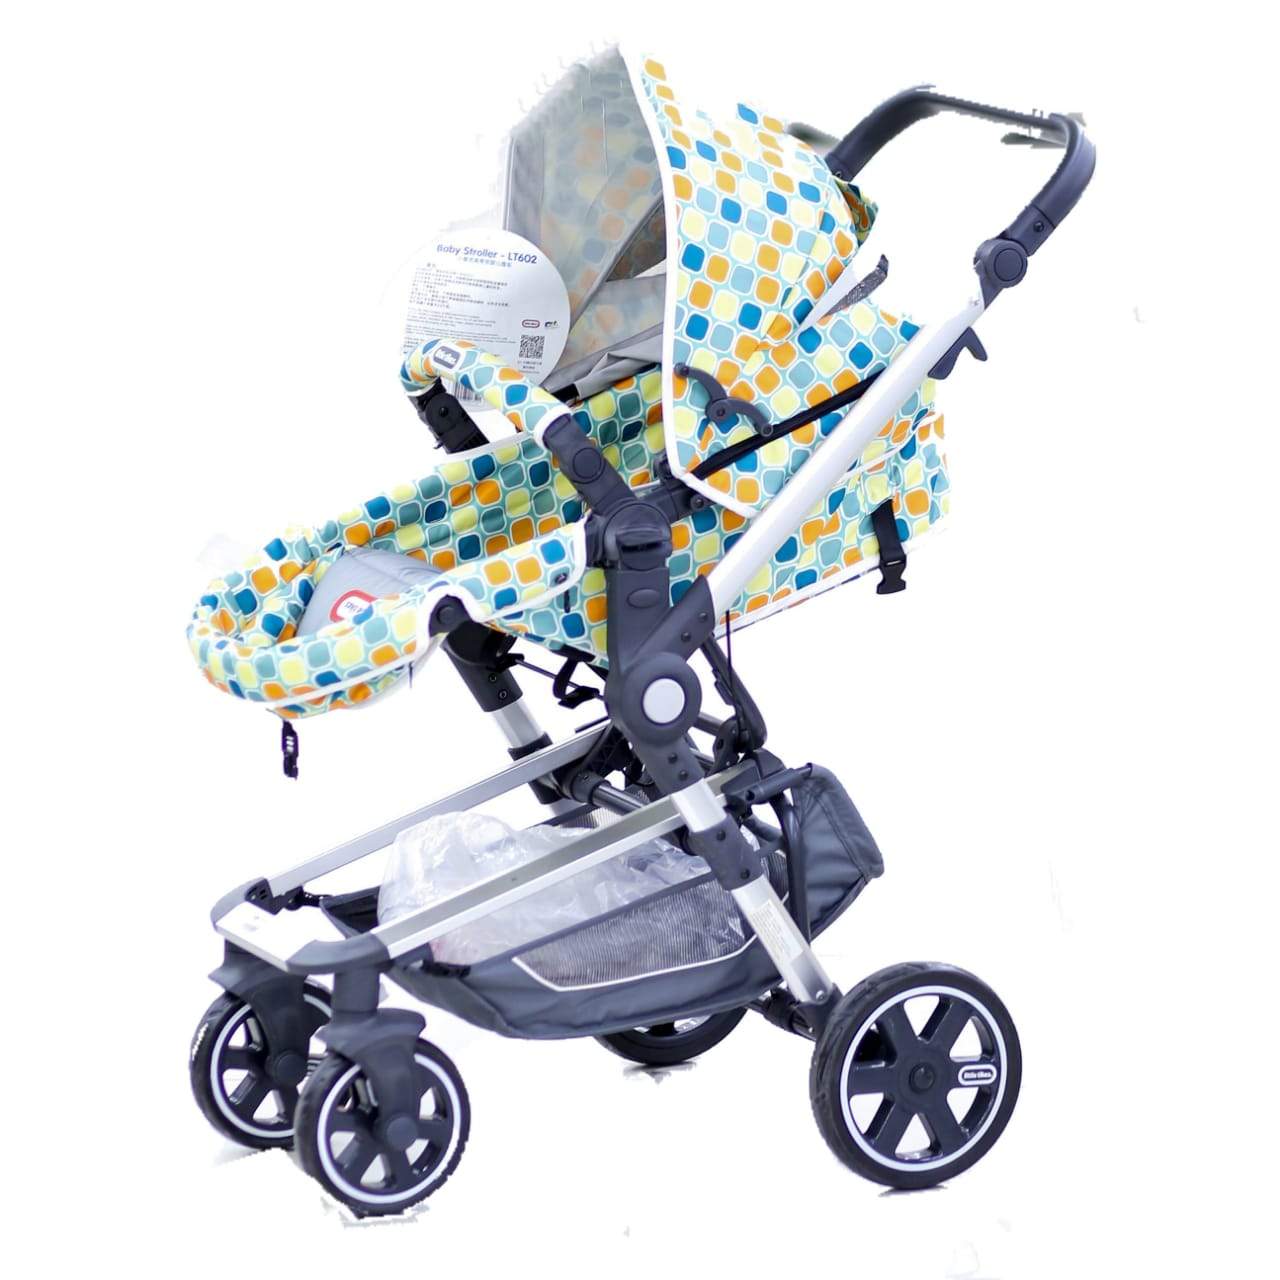 Baby Stroller Lt Lt601/602